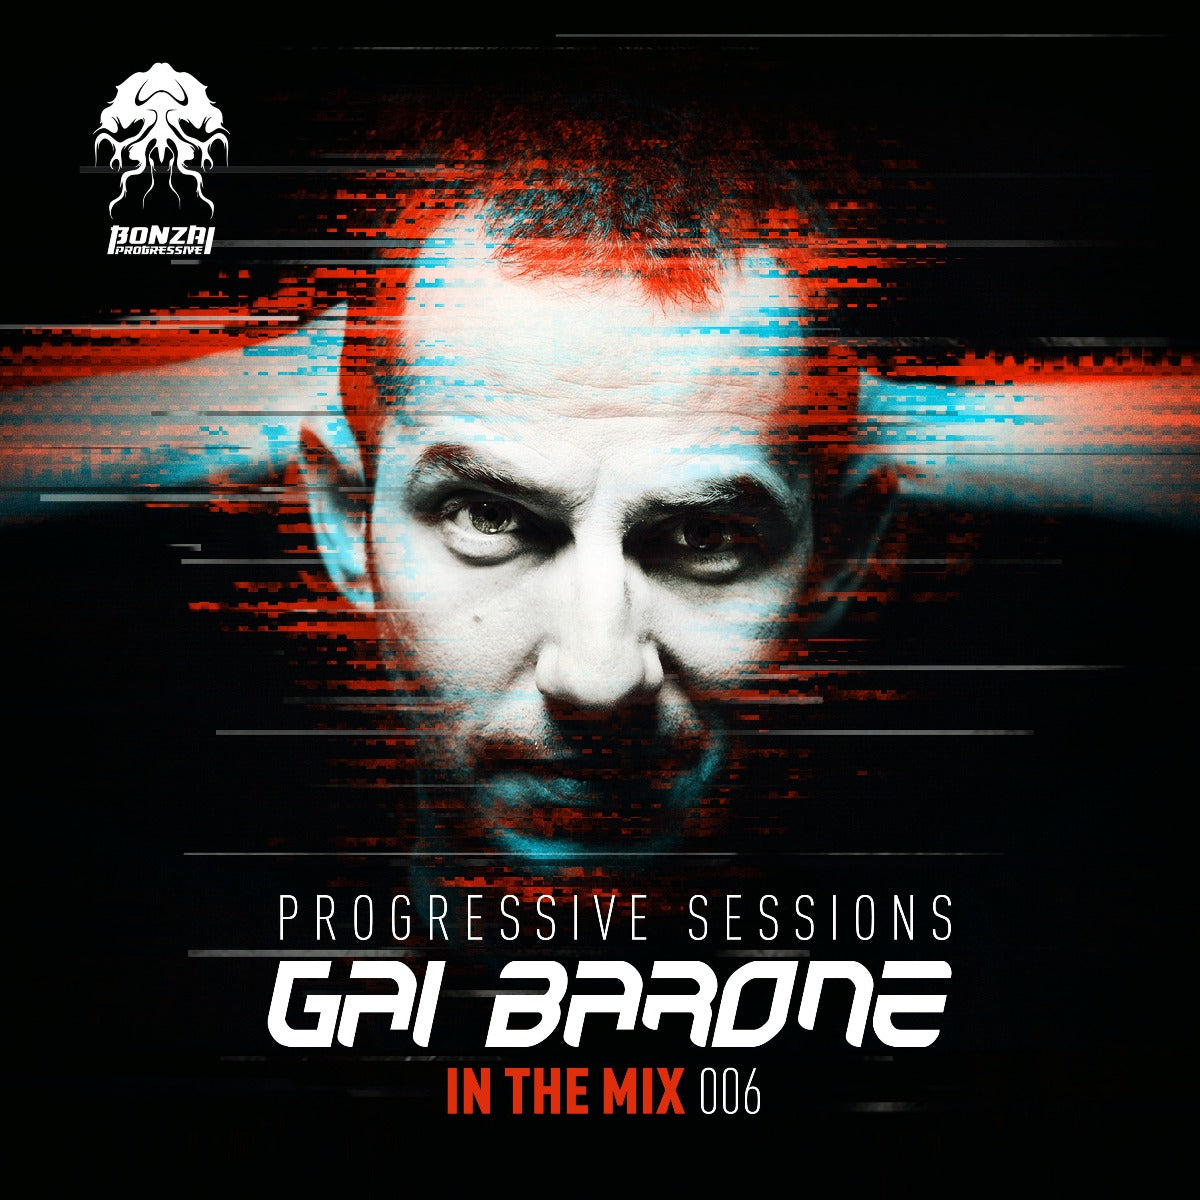 Gai Barone - In The Mix 006 (Progressive Sessions)